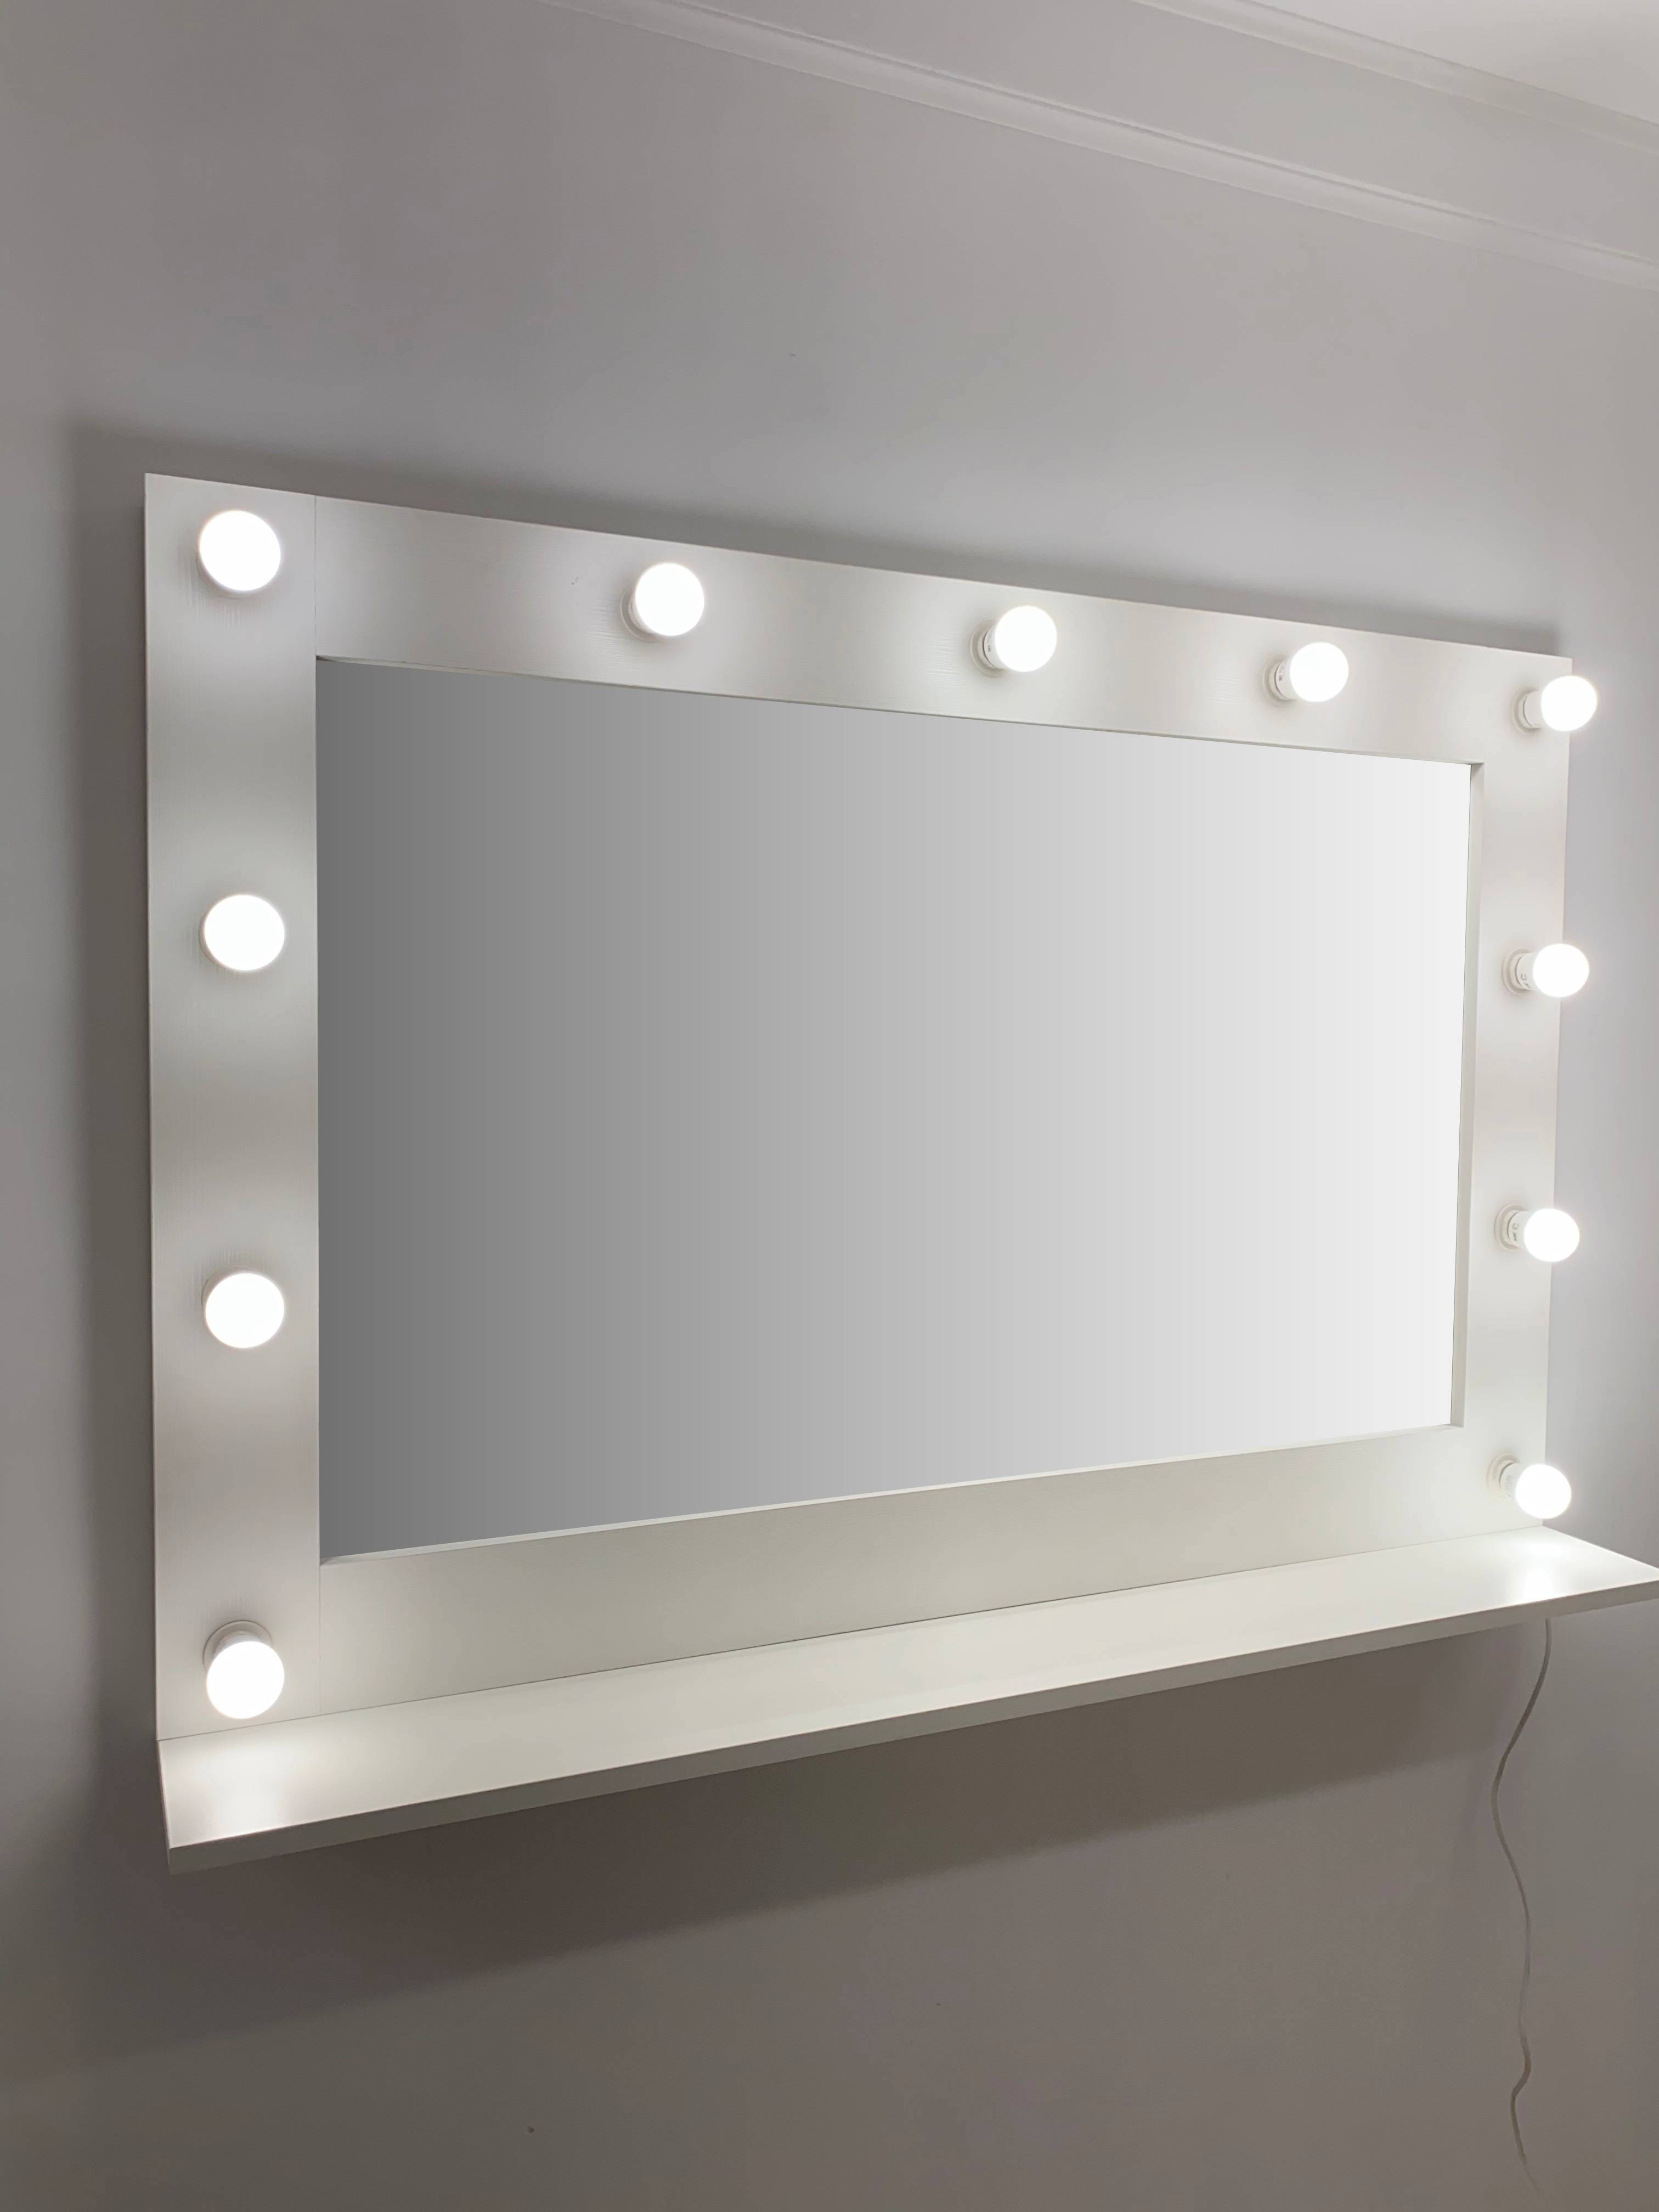 91053078 Гримерное зеркало с лампочками с полочкой 80x120 см цвет белый STLM-0458988 BEAUTYUP